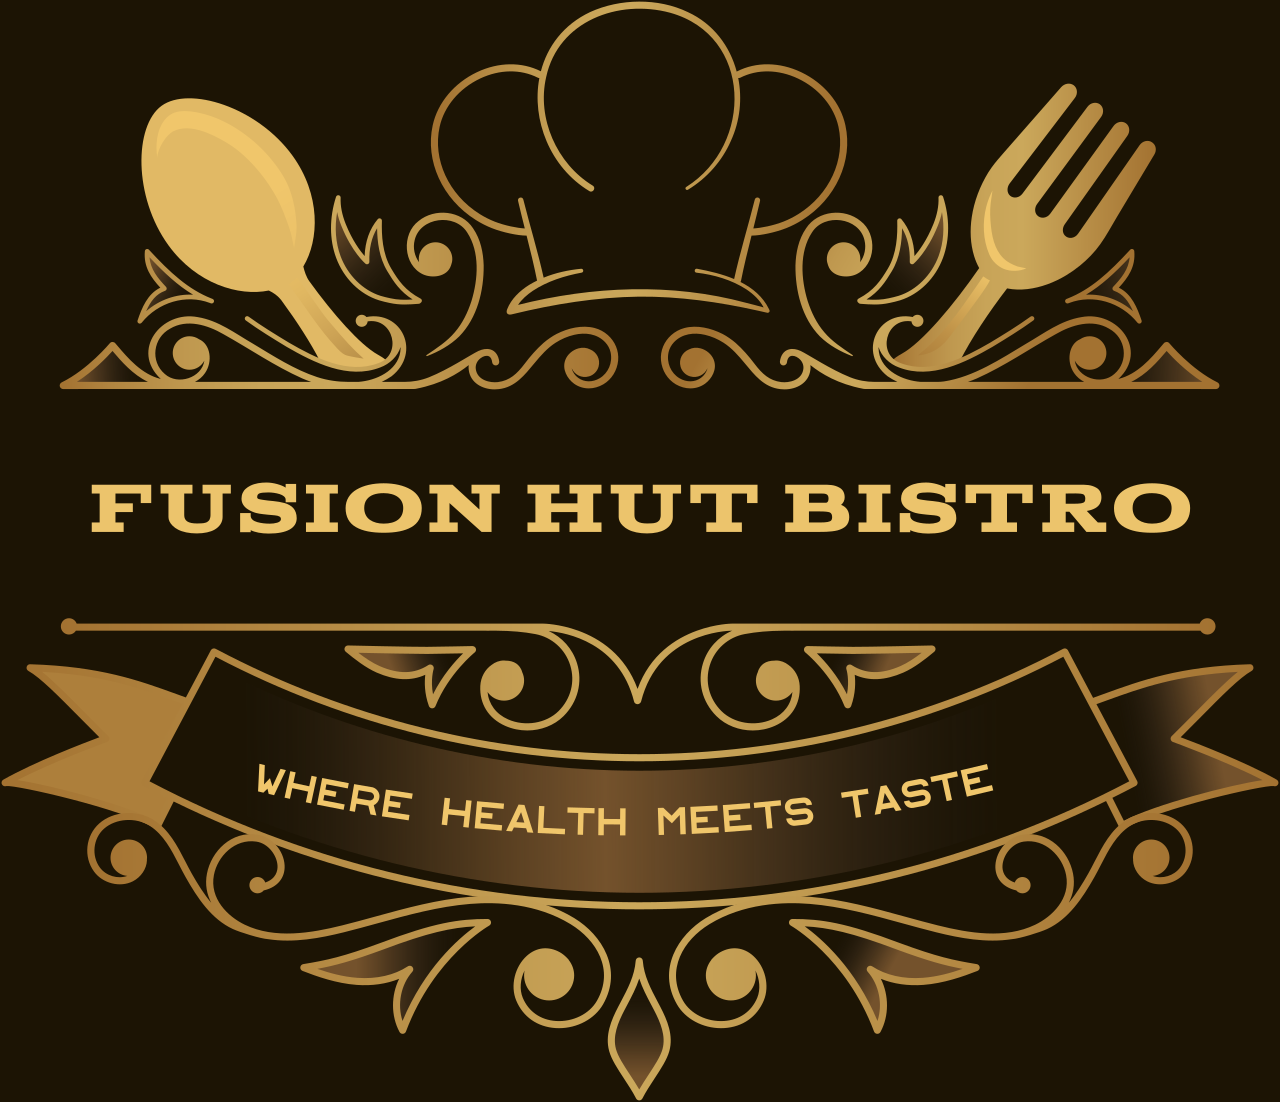 Fusion Hut Bistro's logo